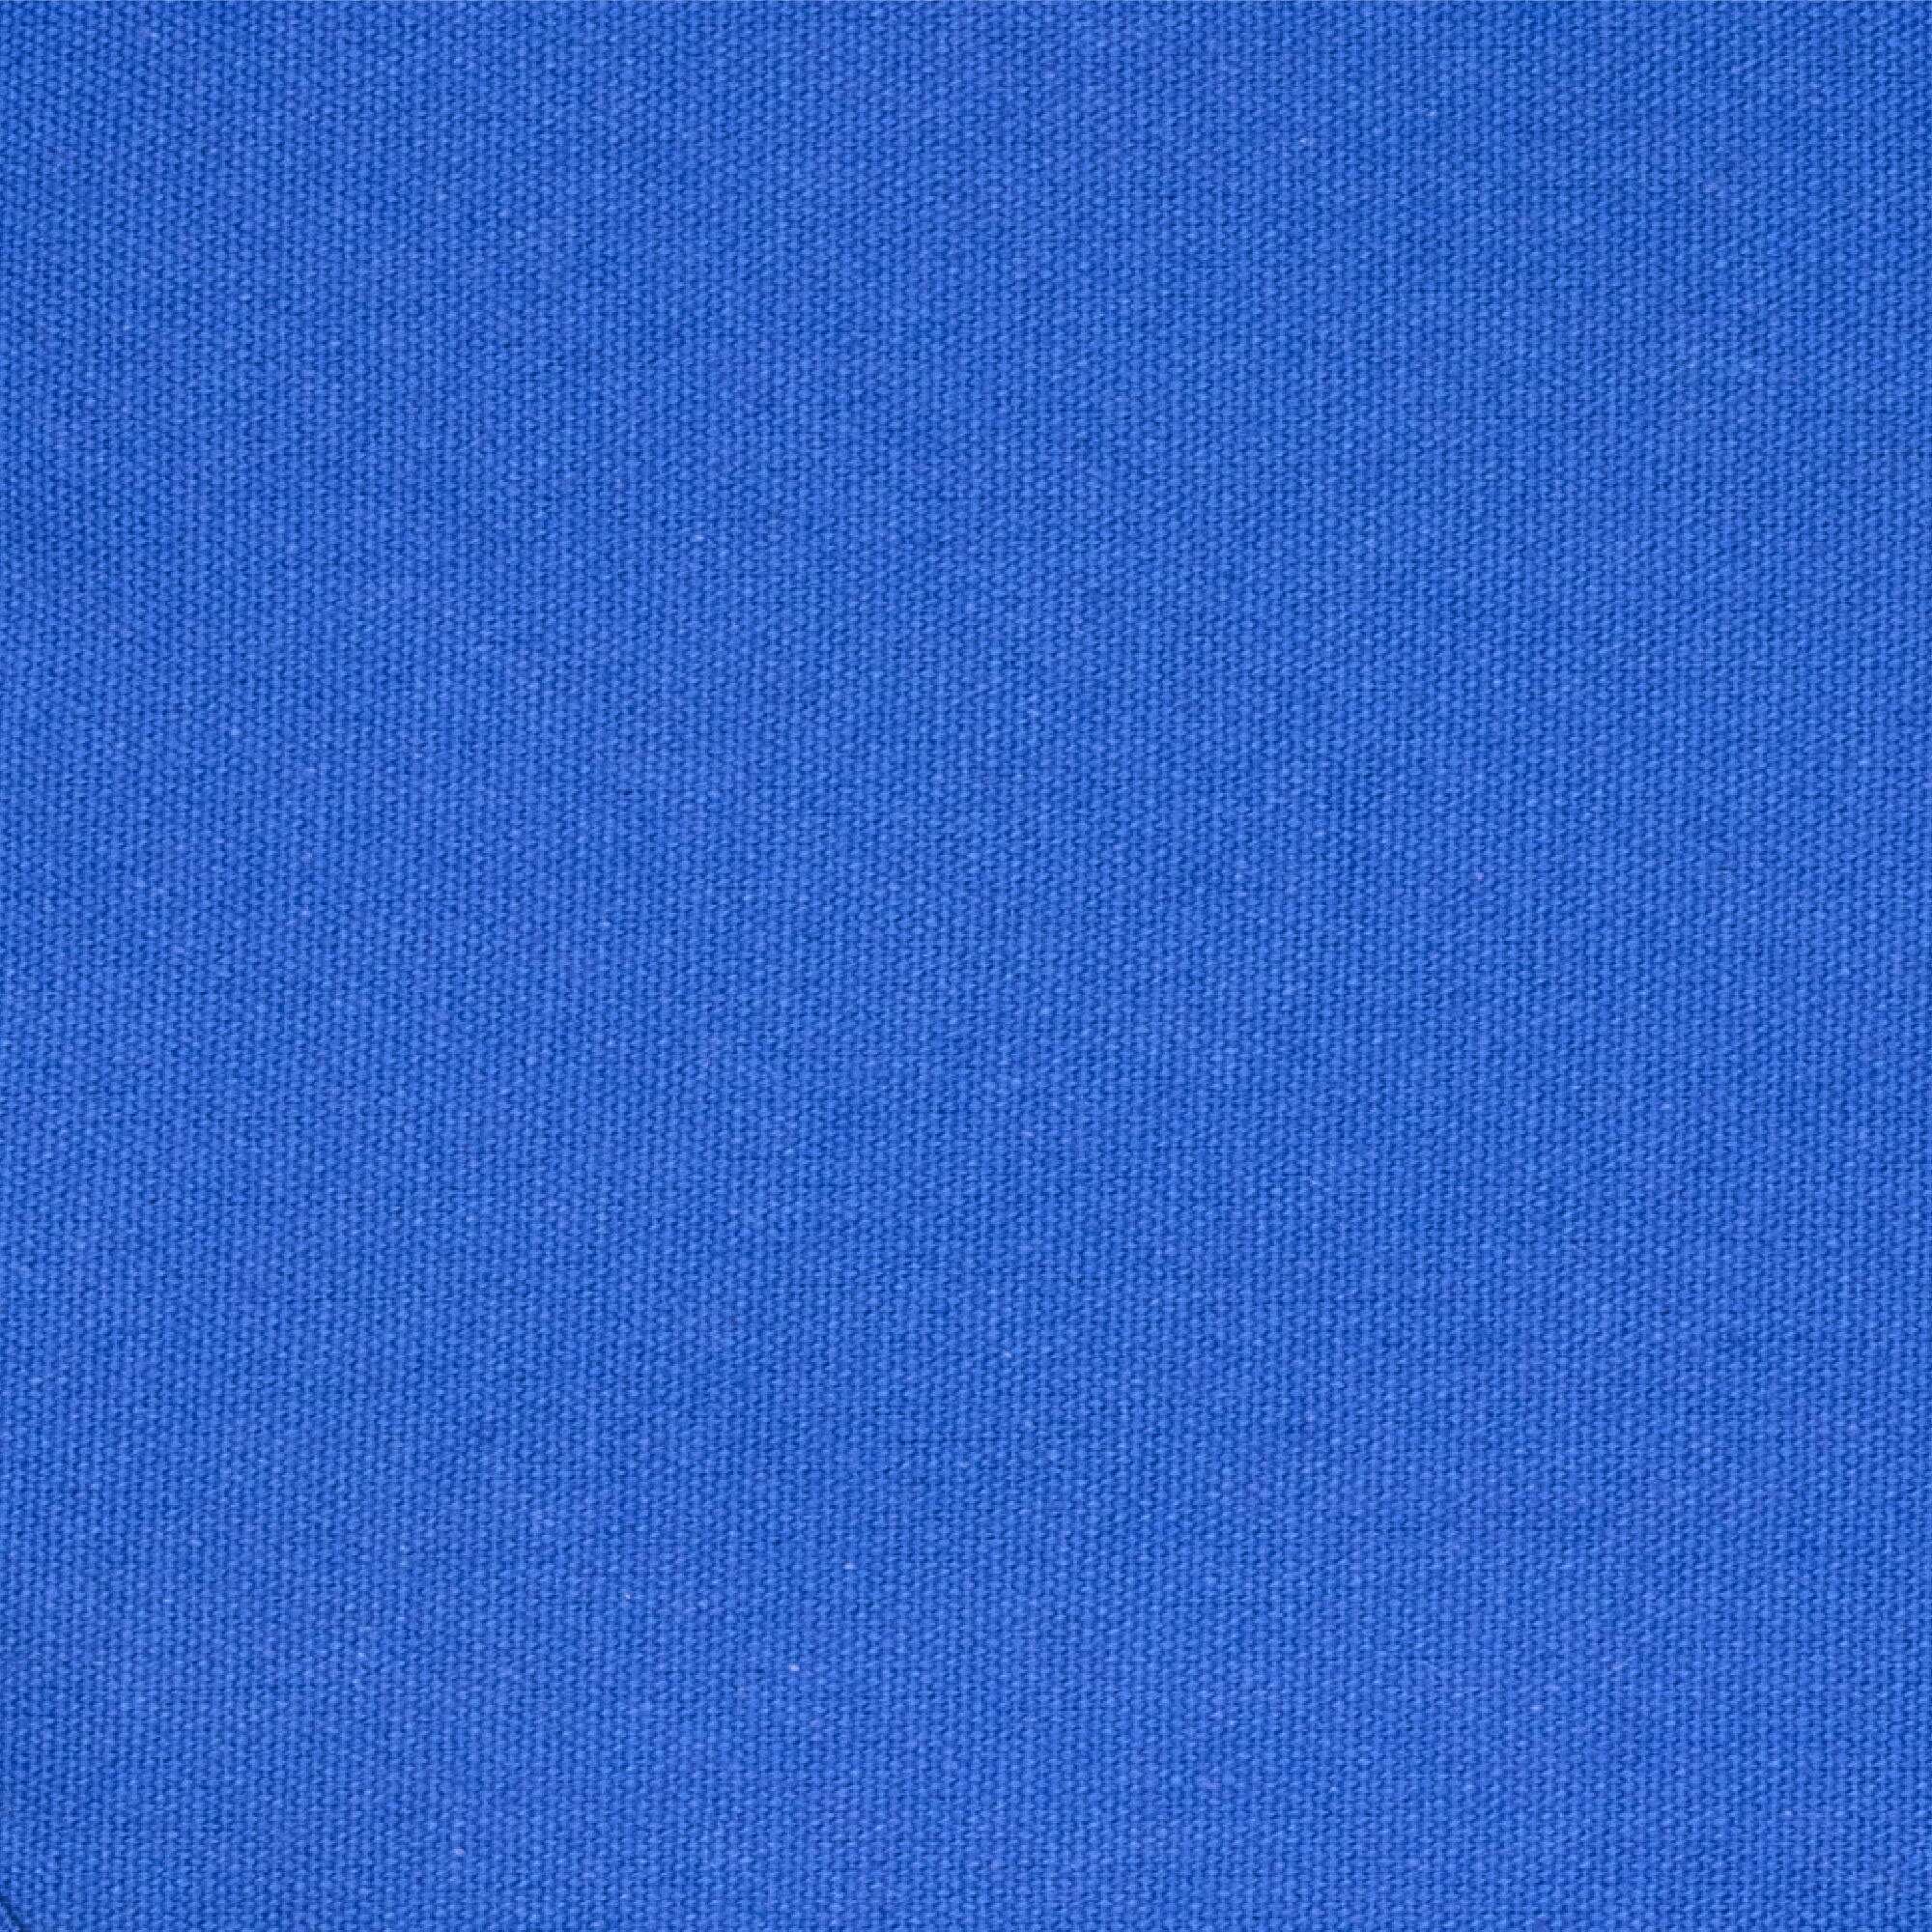 Myga Zafu Meditation Cushion - Blue 7/8